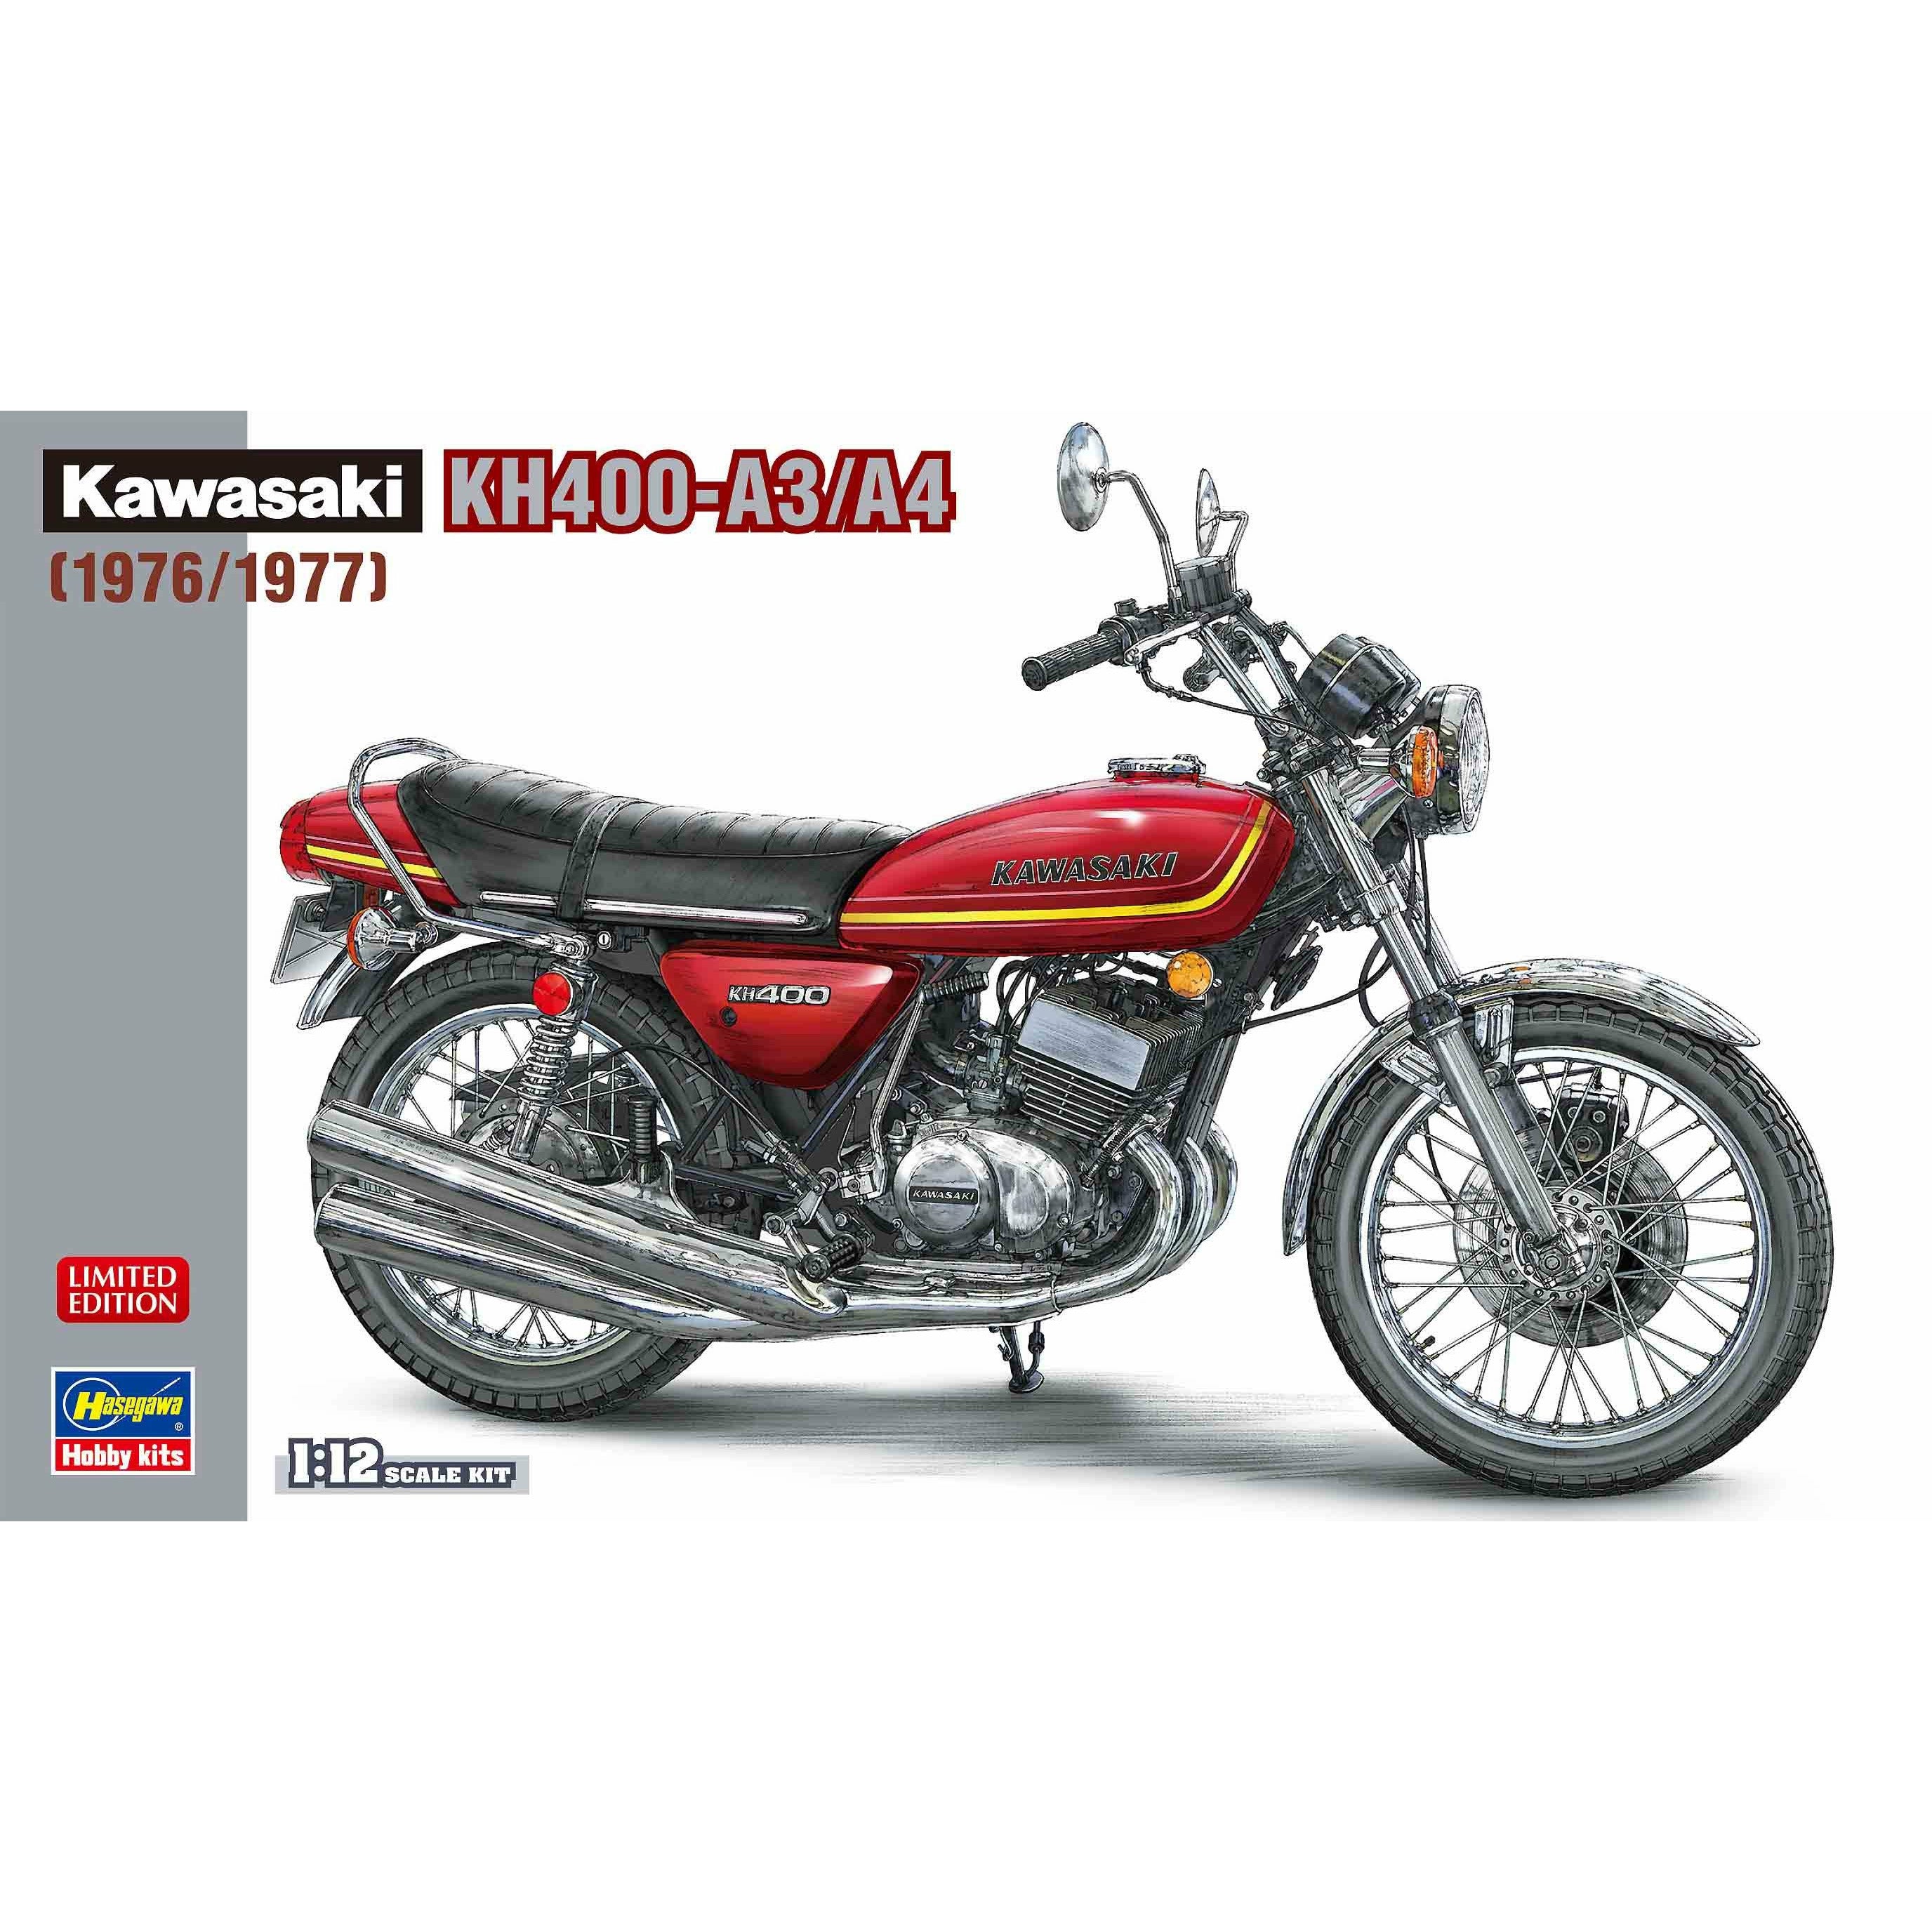 Kawasaki KH400-A3/A4 1976 / 1977 1/12 #21720 by Hasegawa